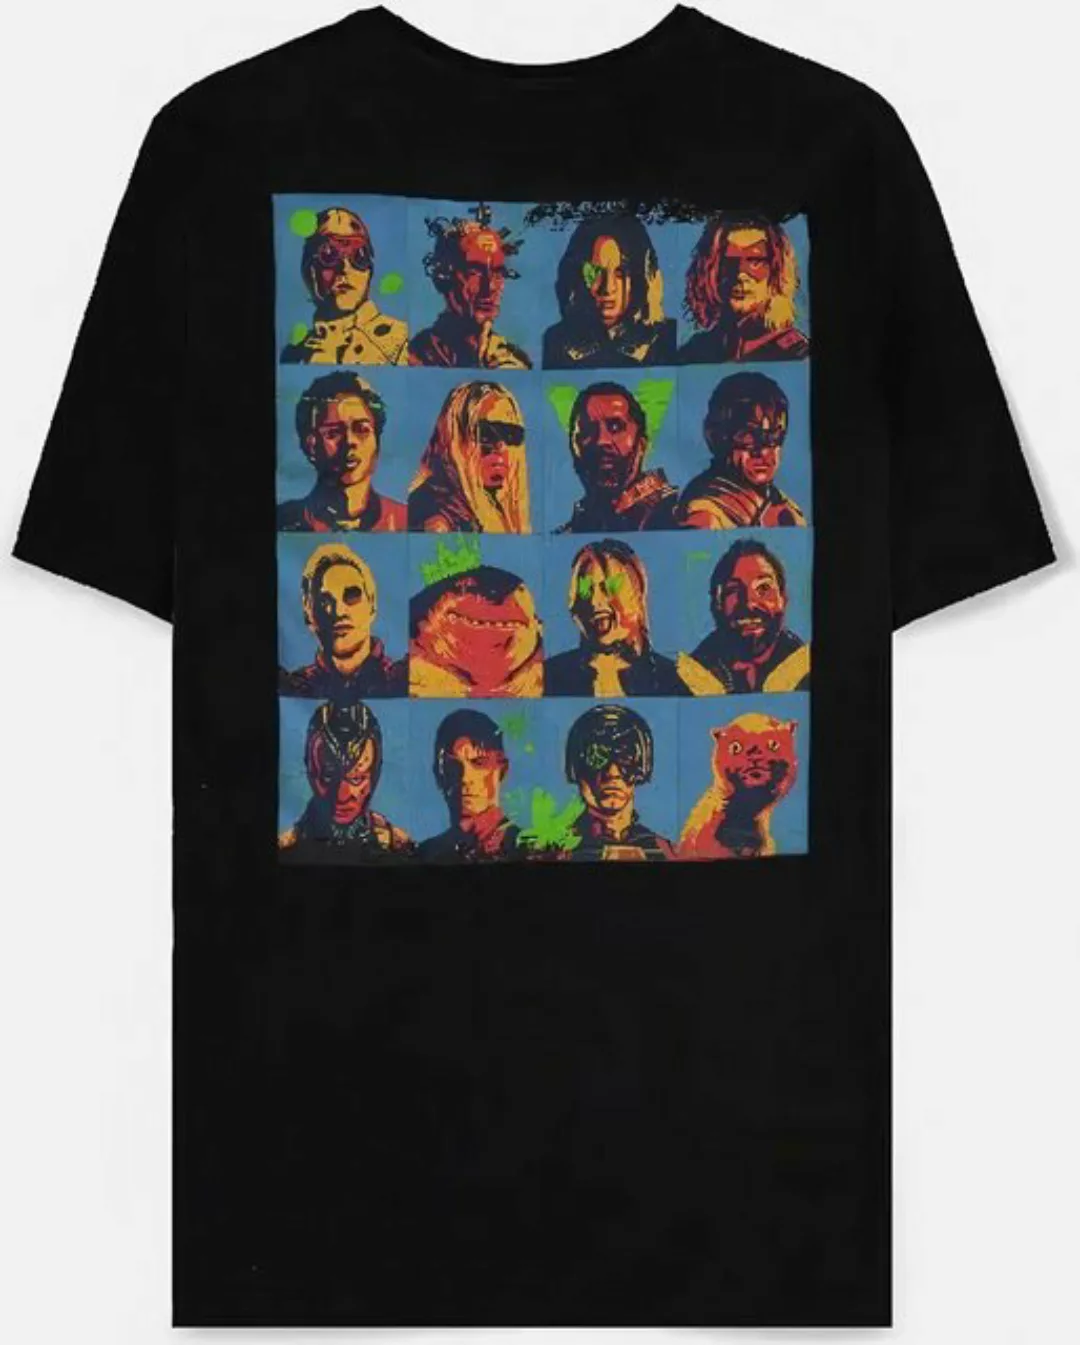 Suicide Squad T-Shirt günstig online kaufen